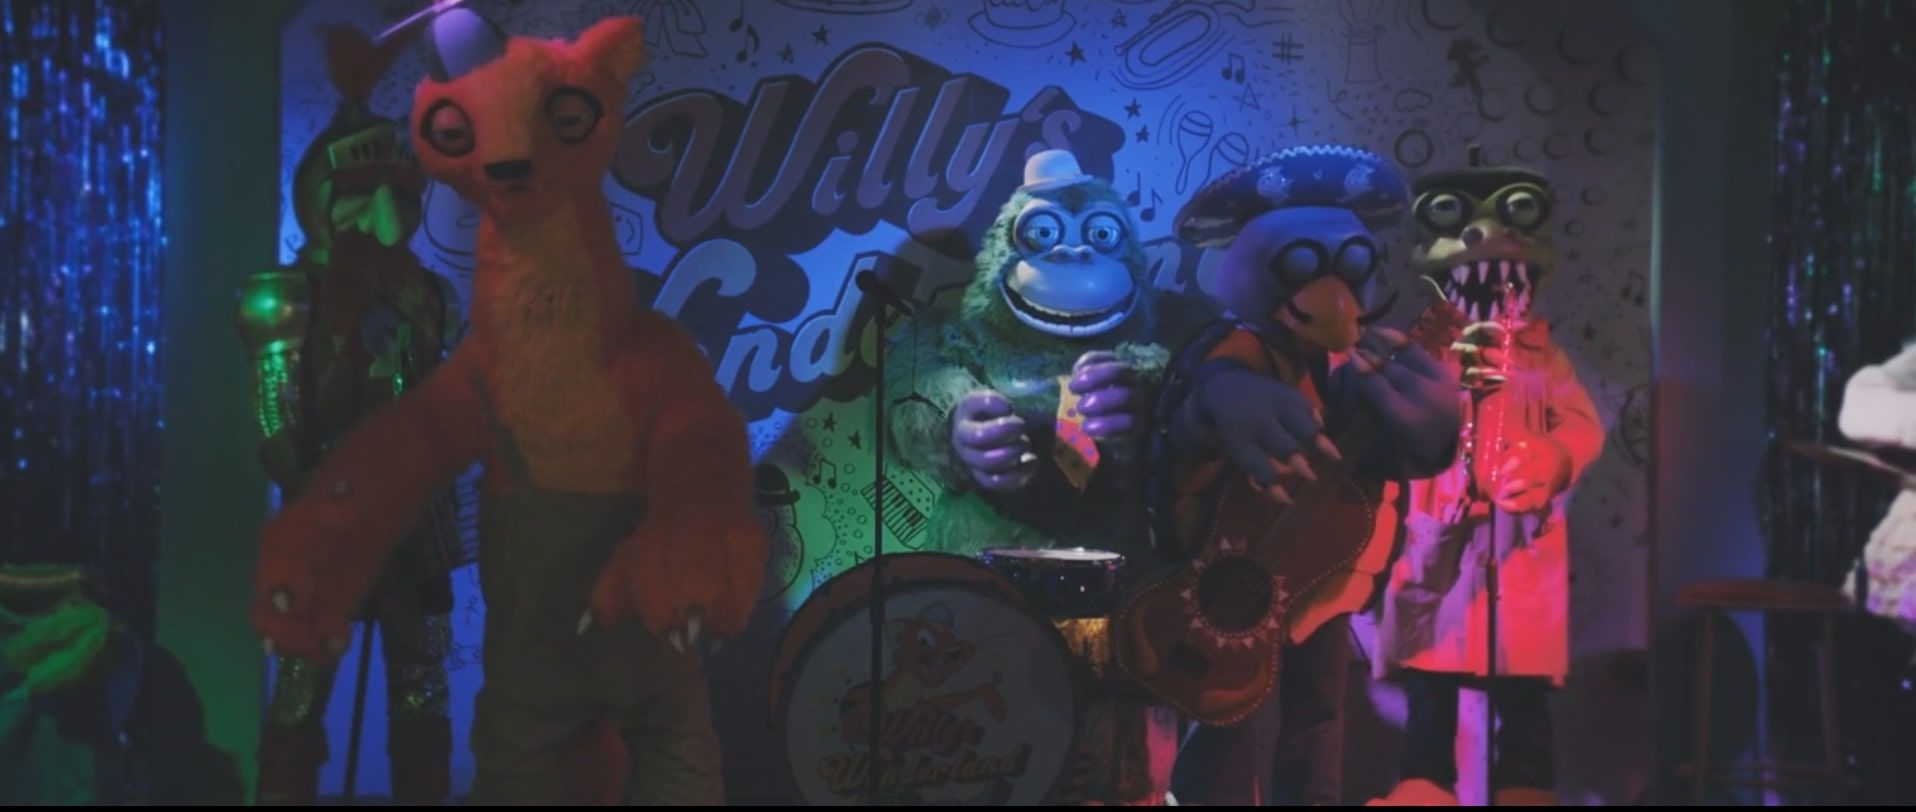 Кровавая пародия на Five Nights at Freddy’s — обзор фильма «Страна чудес Вилли» с Николасом Кейджем